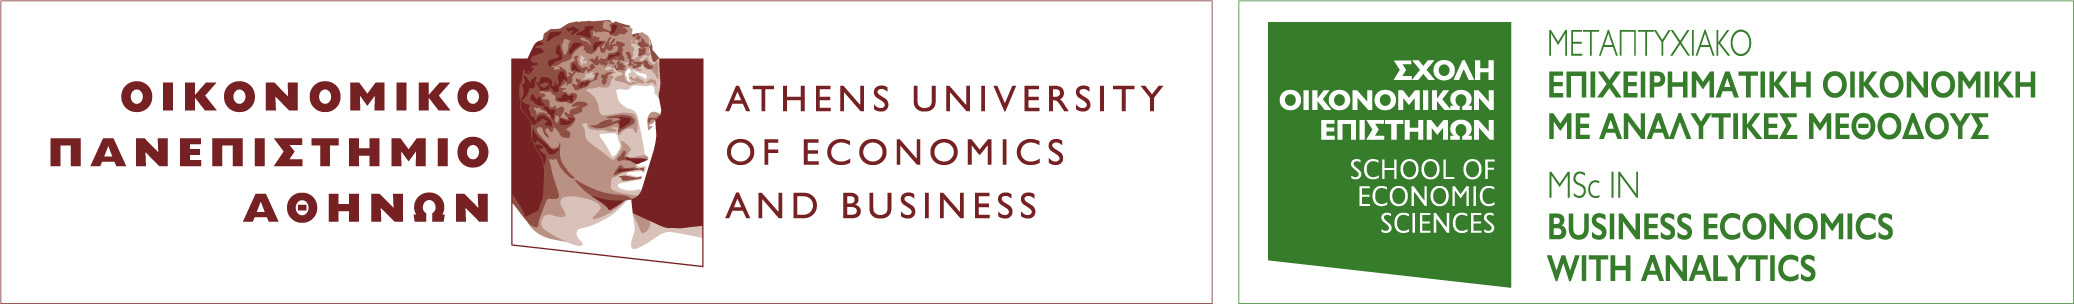 Κορυφαία Μεταπτυχιακά Προγράμματα στο Οικονομικό Πανεπιστήμιο Αθηνών